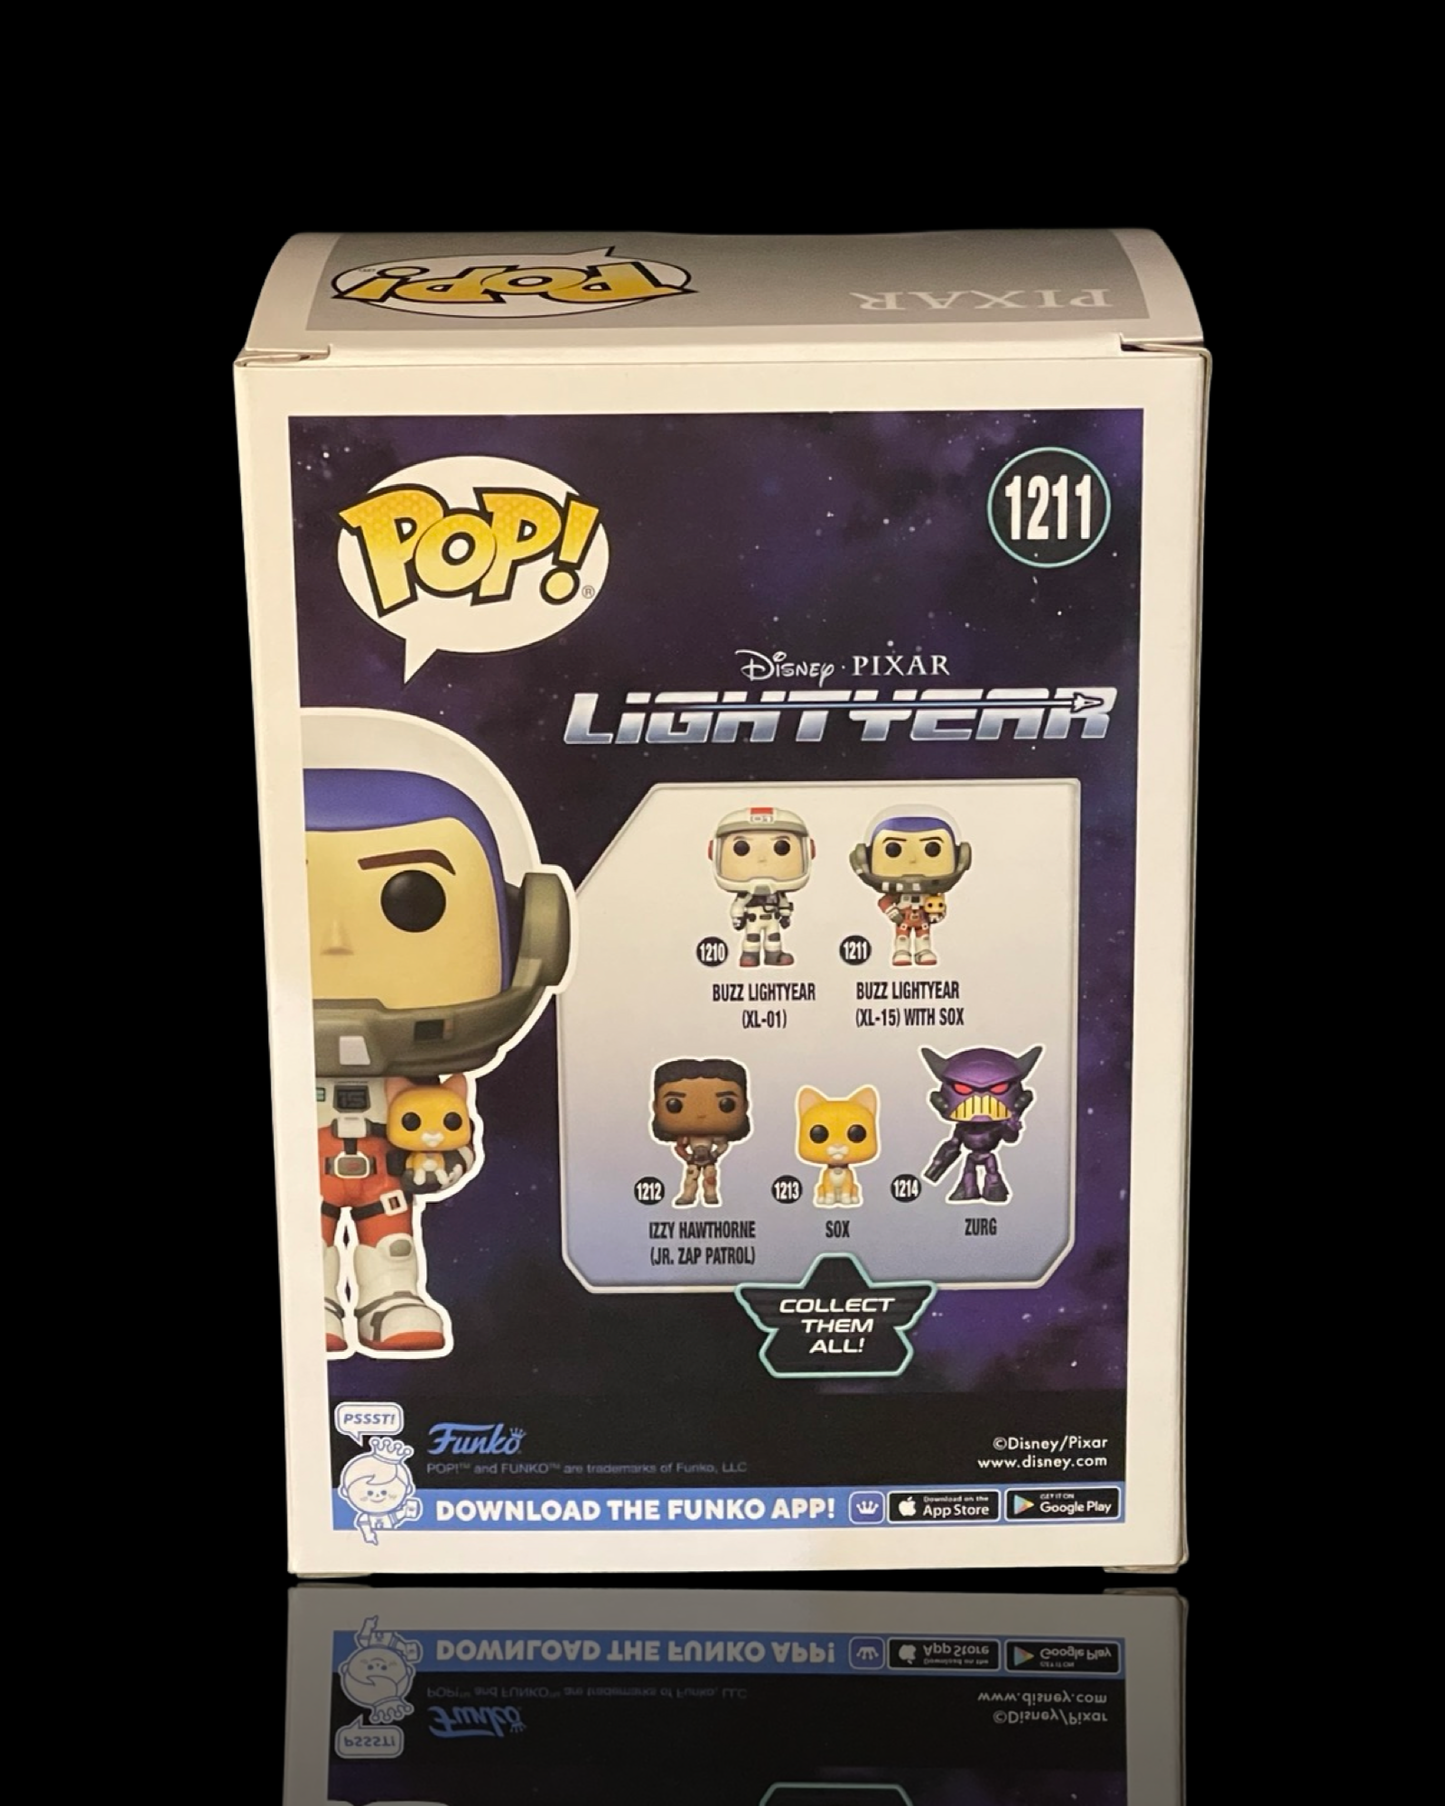 Lightyear: Buzz Lightyear (XL-15) with Sox